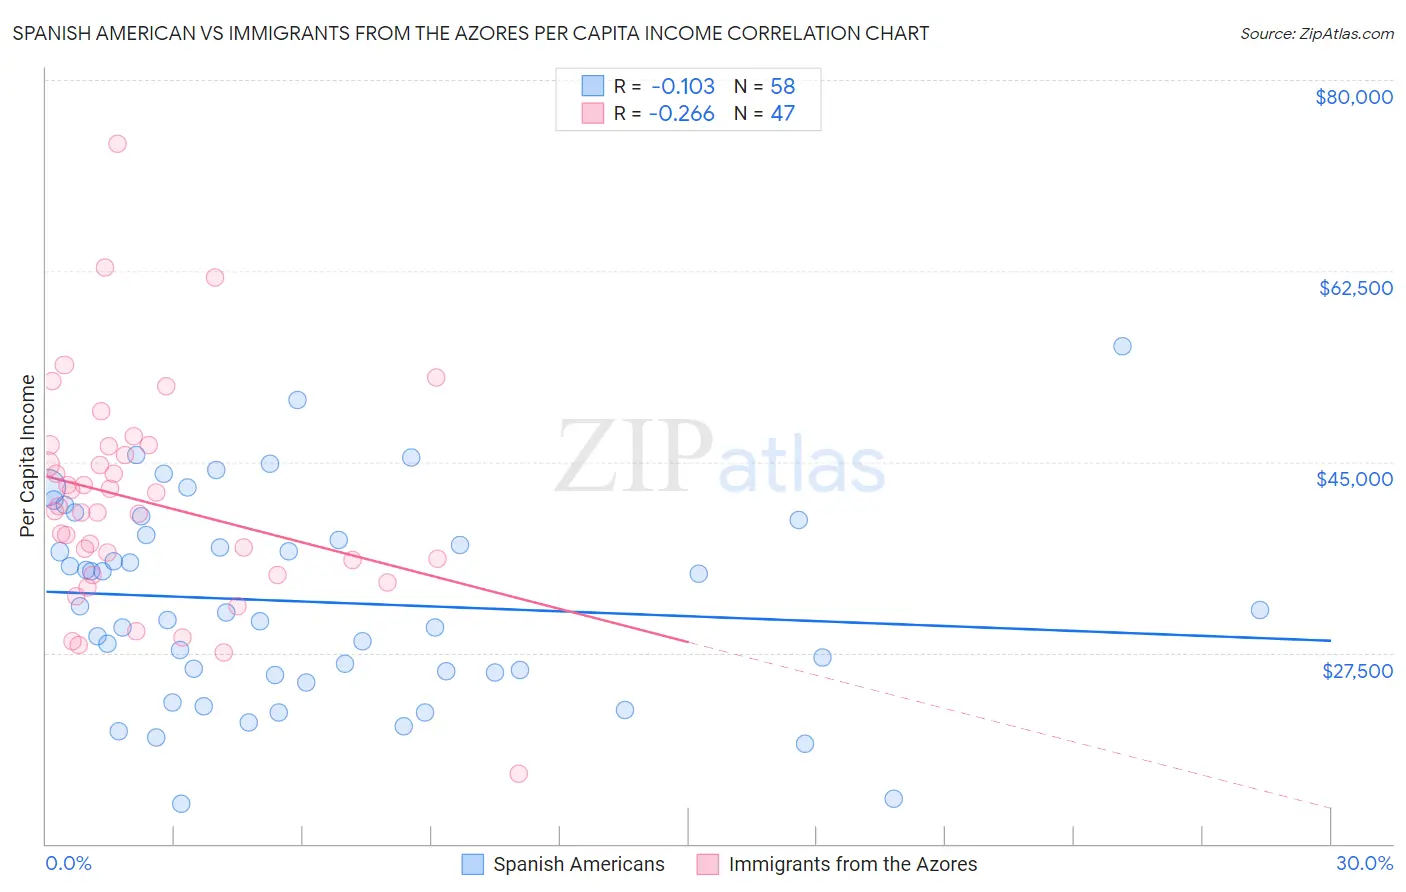 Spanish American vs Immigrants from the Azores Per Capita Income